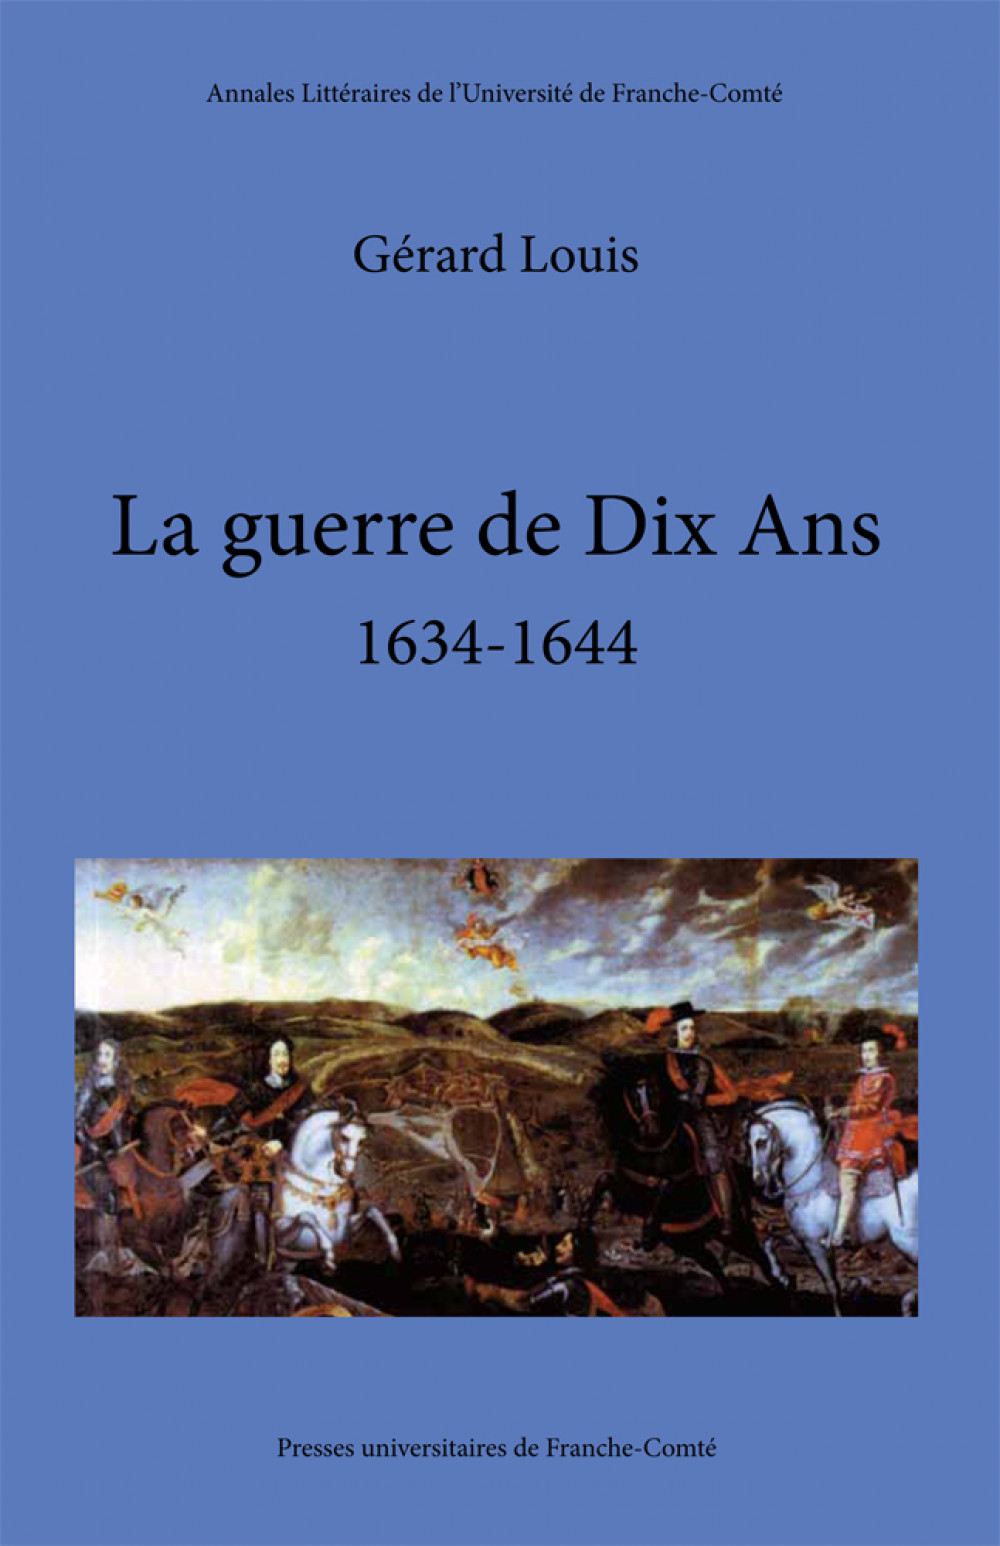 La guerre de Dix ans (1634-1644)